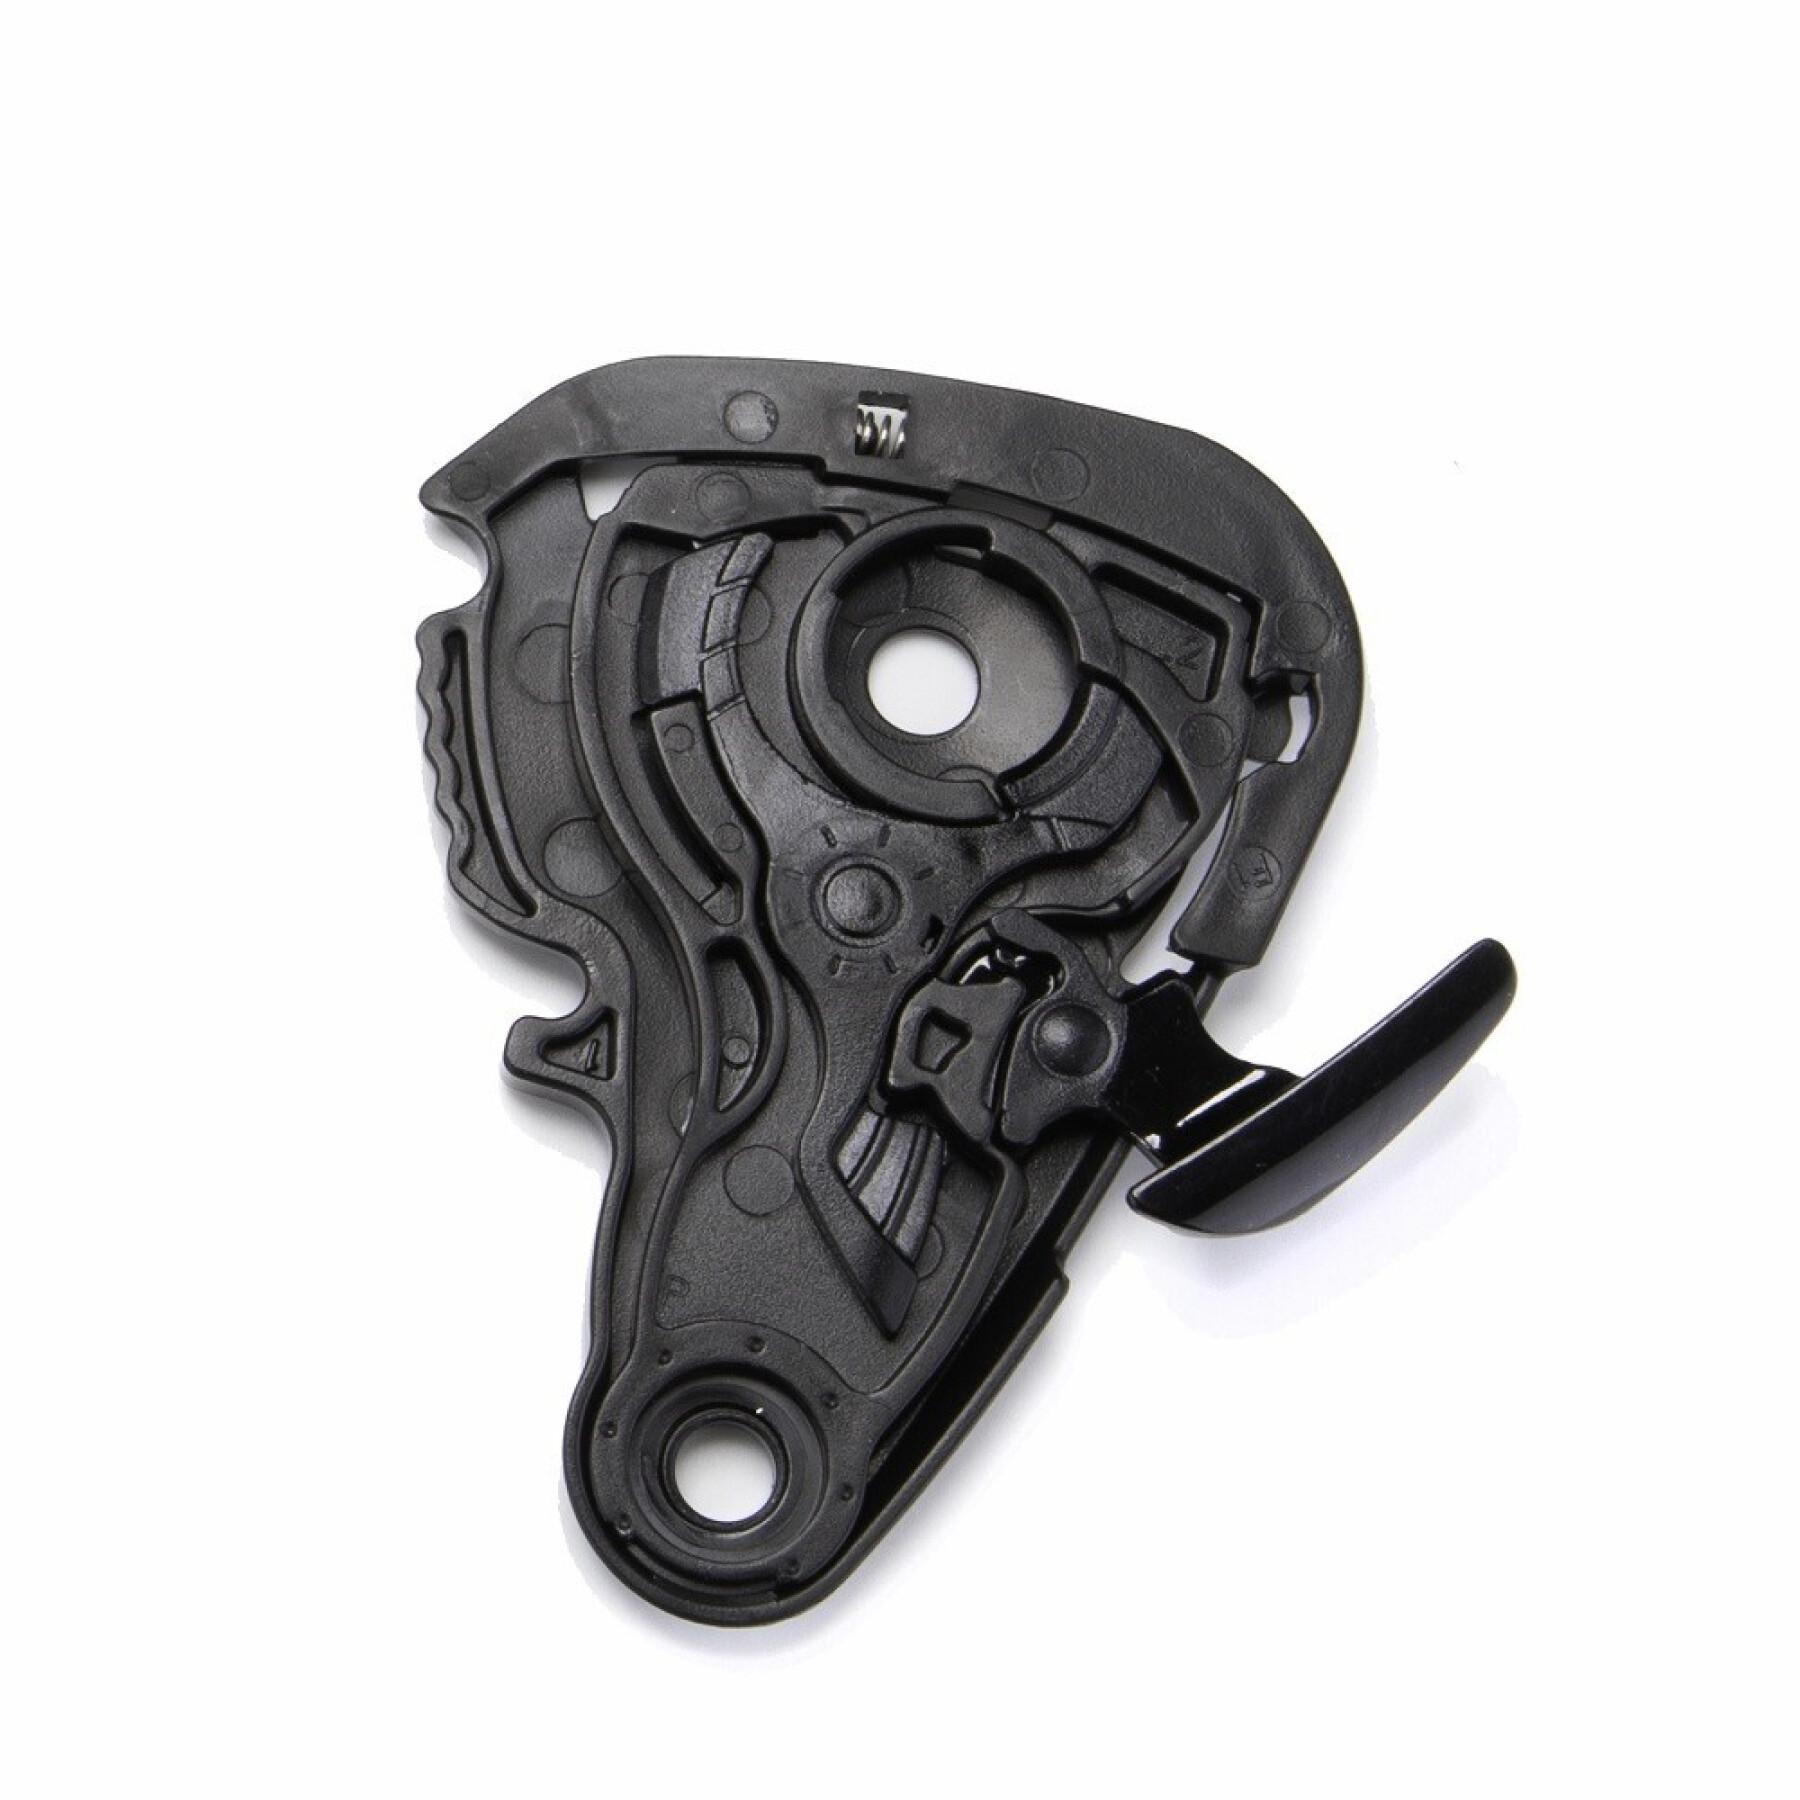 Motorcycle visor mounting kit Scorpion KDF16-1, Exo-1400 / R1 / 520 (Evo) AIR / 391Shield